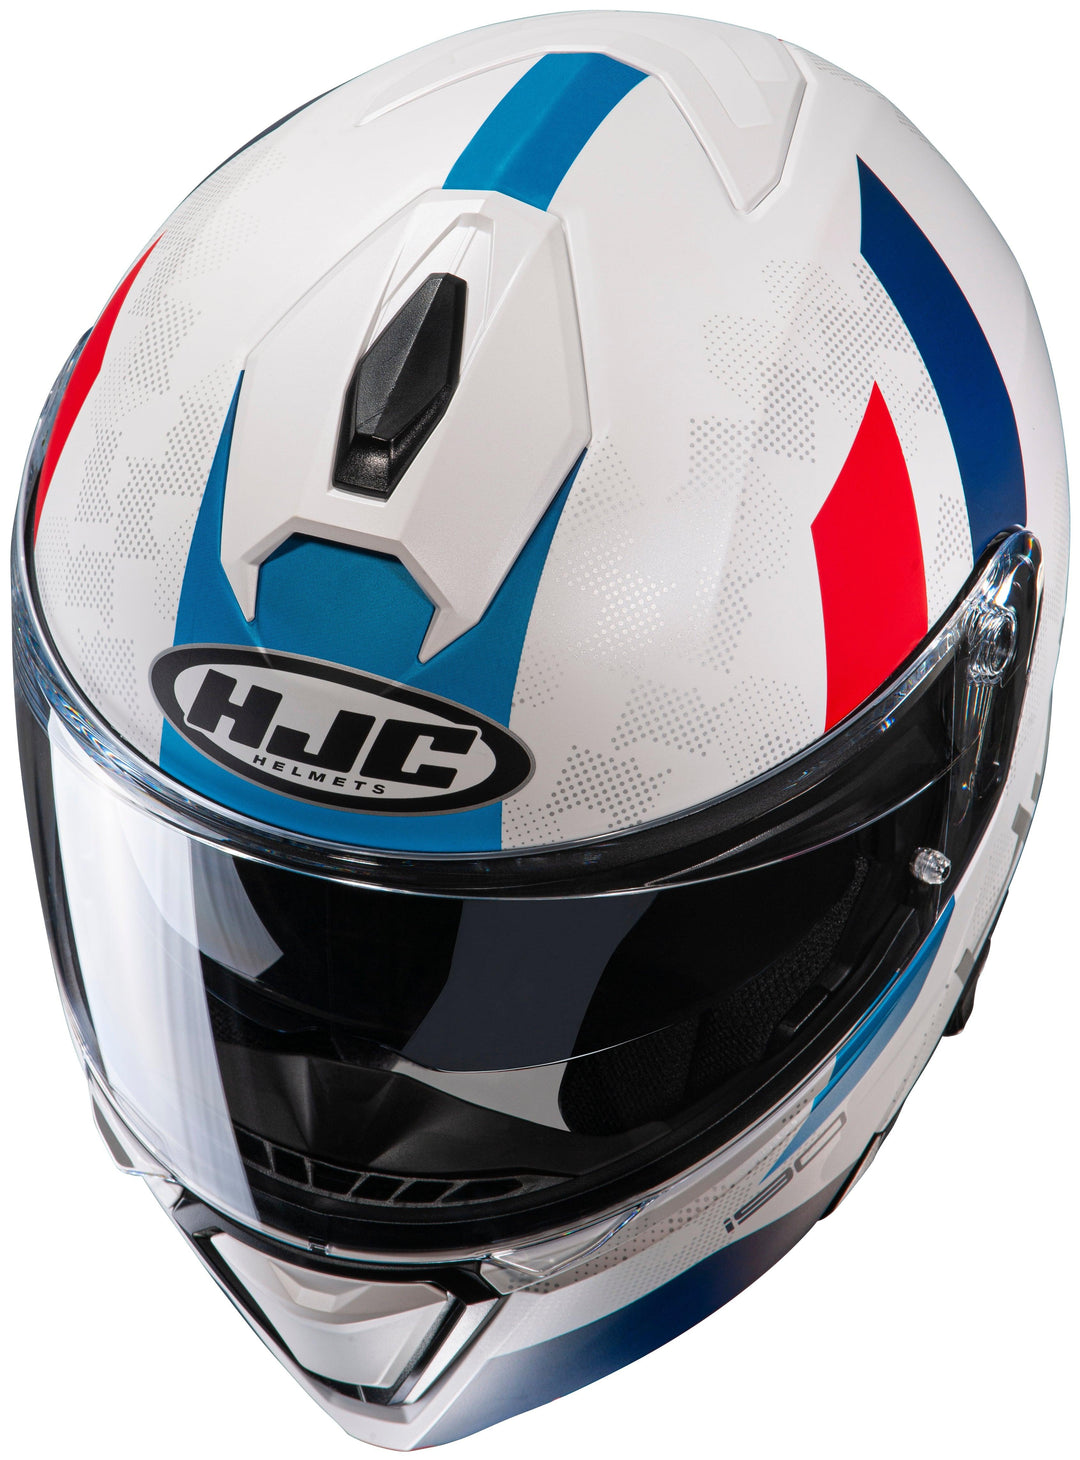 HJC i90 Syrex Modular Helmet - MC-21SF White/Red/Blue - Motor Psycho Sport